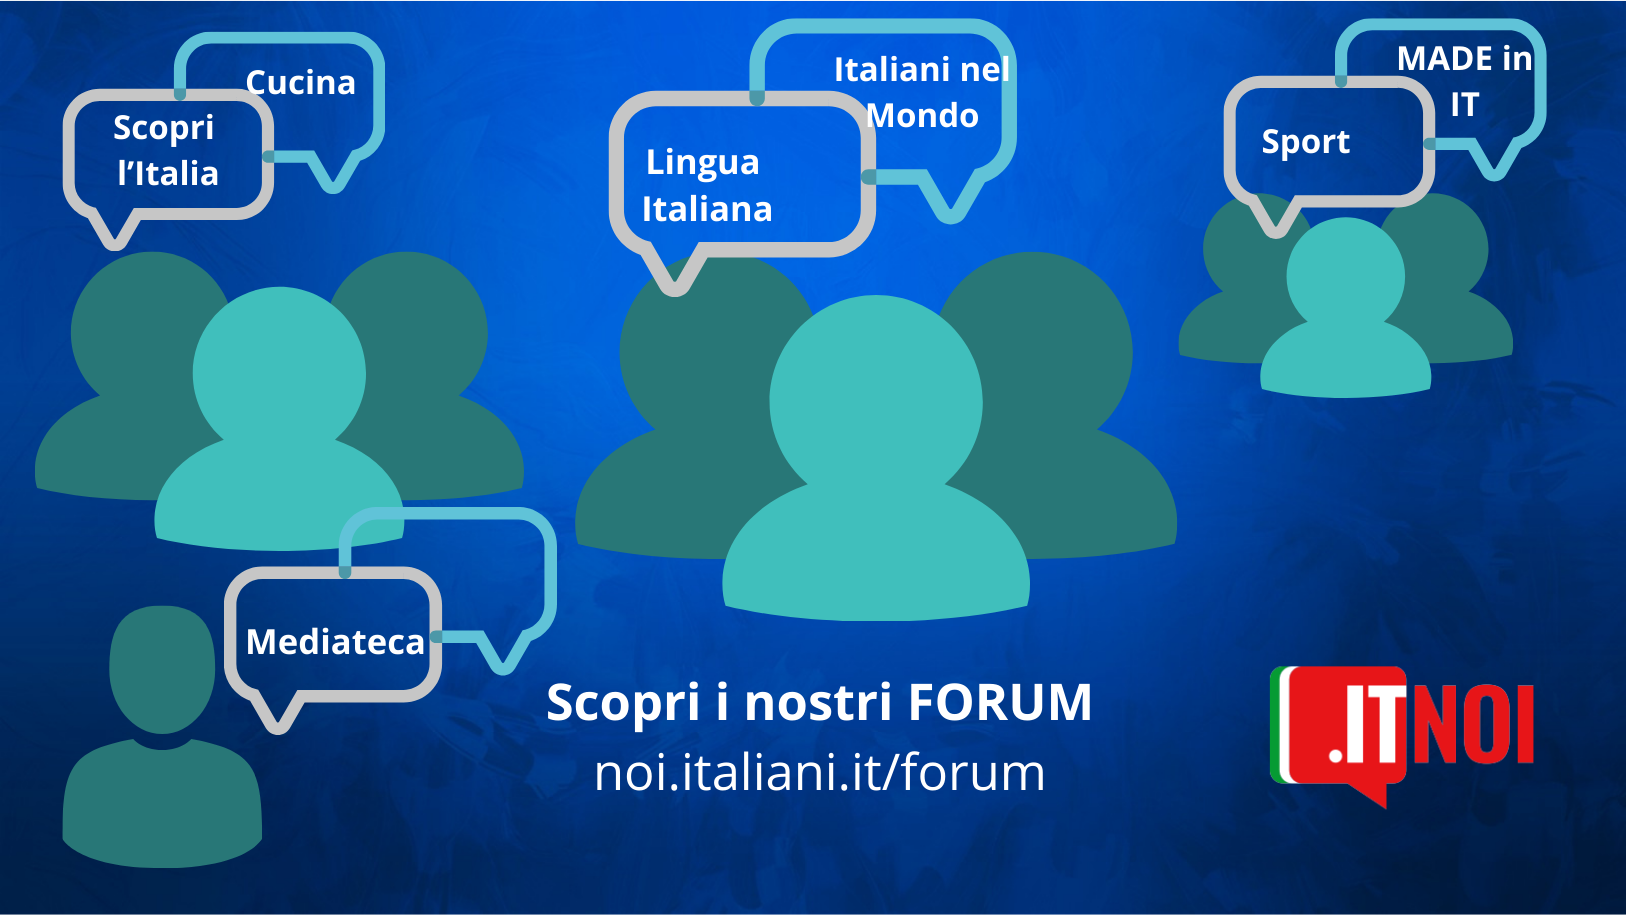 Conoce Forum, la novedad de la comunidad itNoi.it